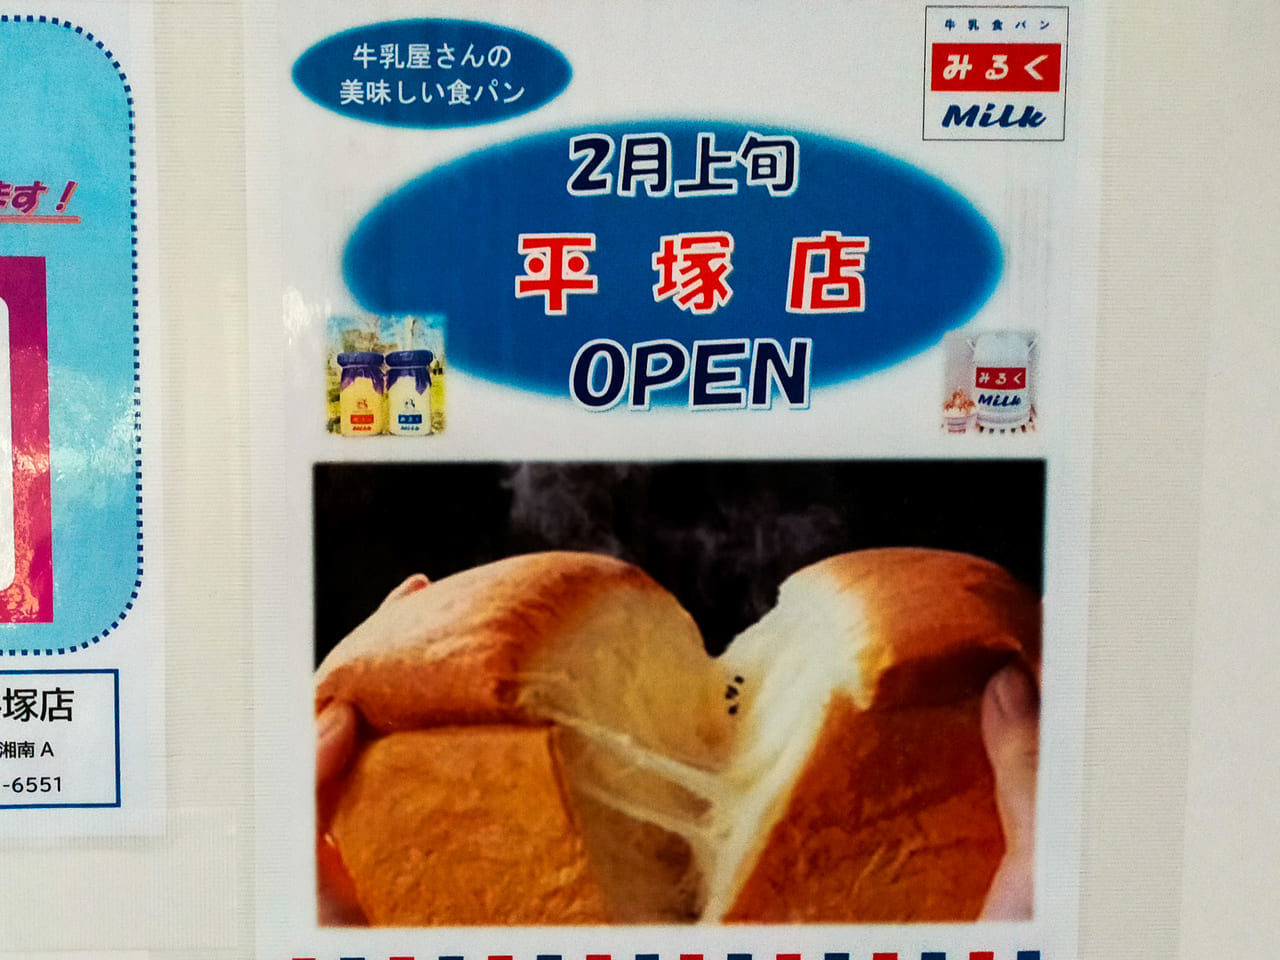 宮松町に「牛乳食パン専門店みるく 平塚店」が2月上旬オープン予定です！